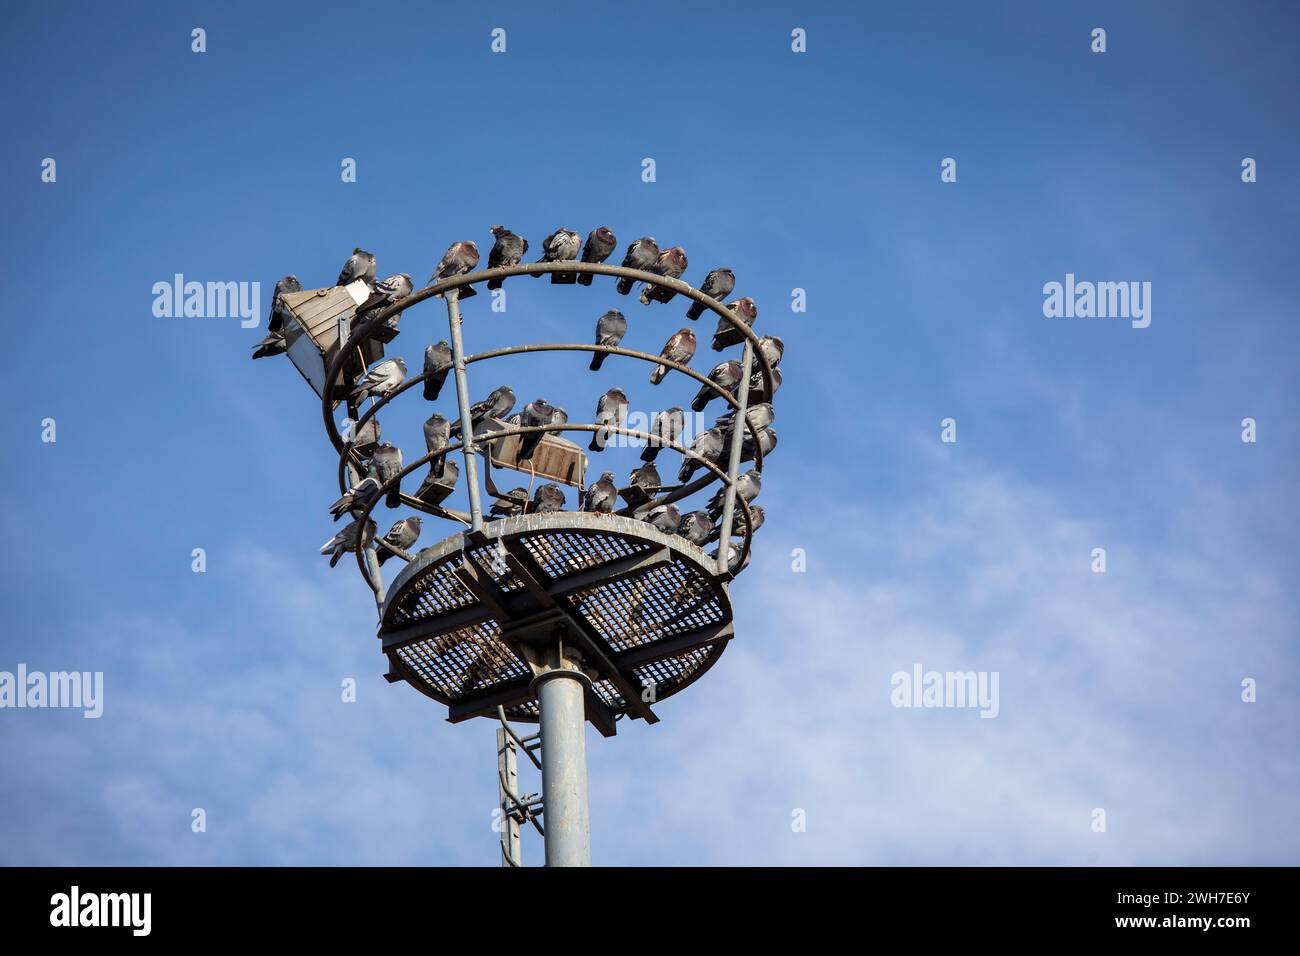 pigeons sitting on an old floodlight mast in the port Deutz, Cologne, Germany. Tauben sitzen auf einem alten Scheinwerfermast im Deutzer Hafen, Koeln, Stock Photo